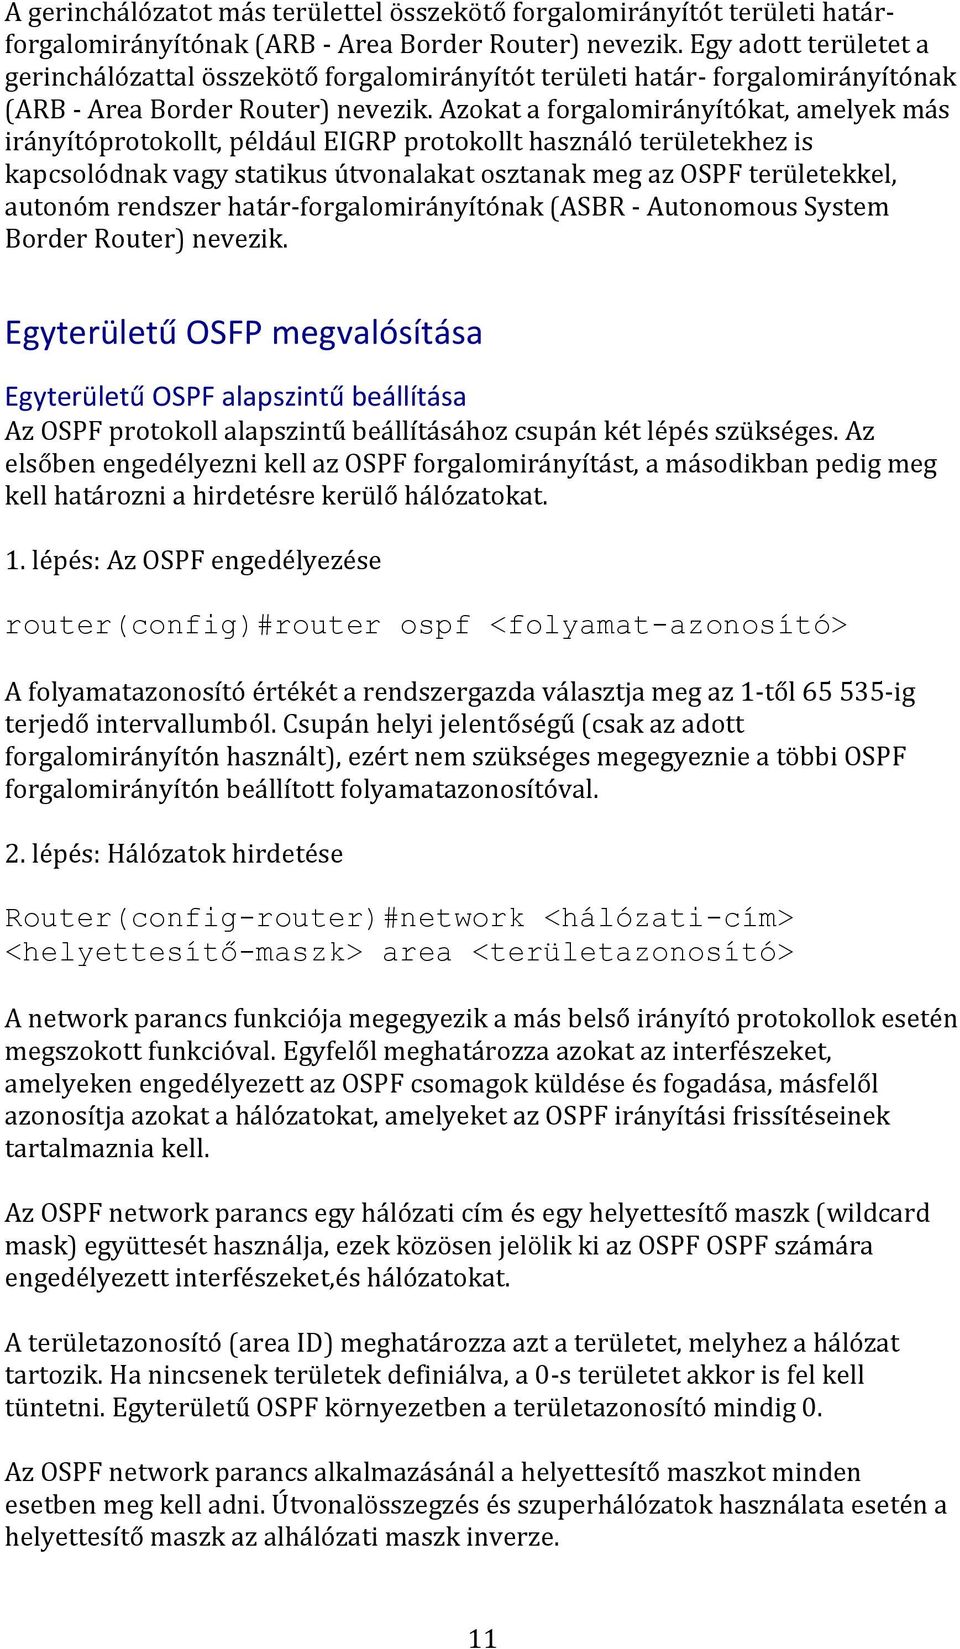 Azokat a forgalomirányítókat, amelyek más irányítóprotokollt, például EIGRP protokollt használó területekhez is kapcsolódnak vagy statikus útvonalakat osztanak meg az OSPF területekkel, autonóm